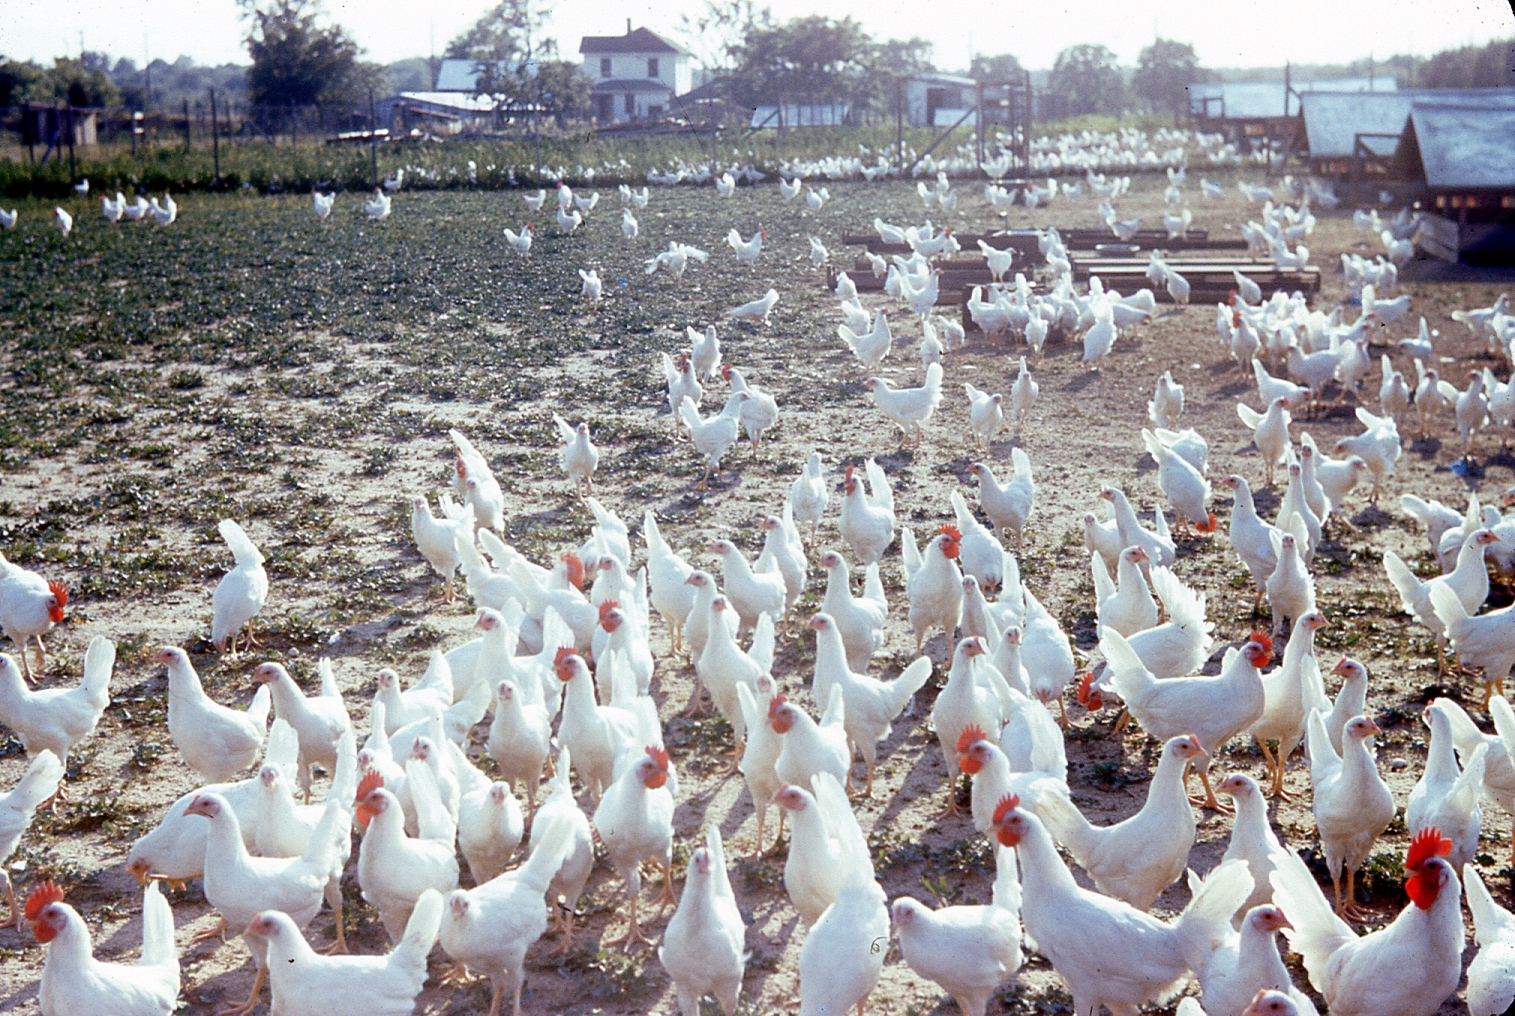 A Friendly Neighborhood Chicken Farm in Jersey City